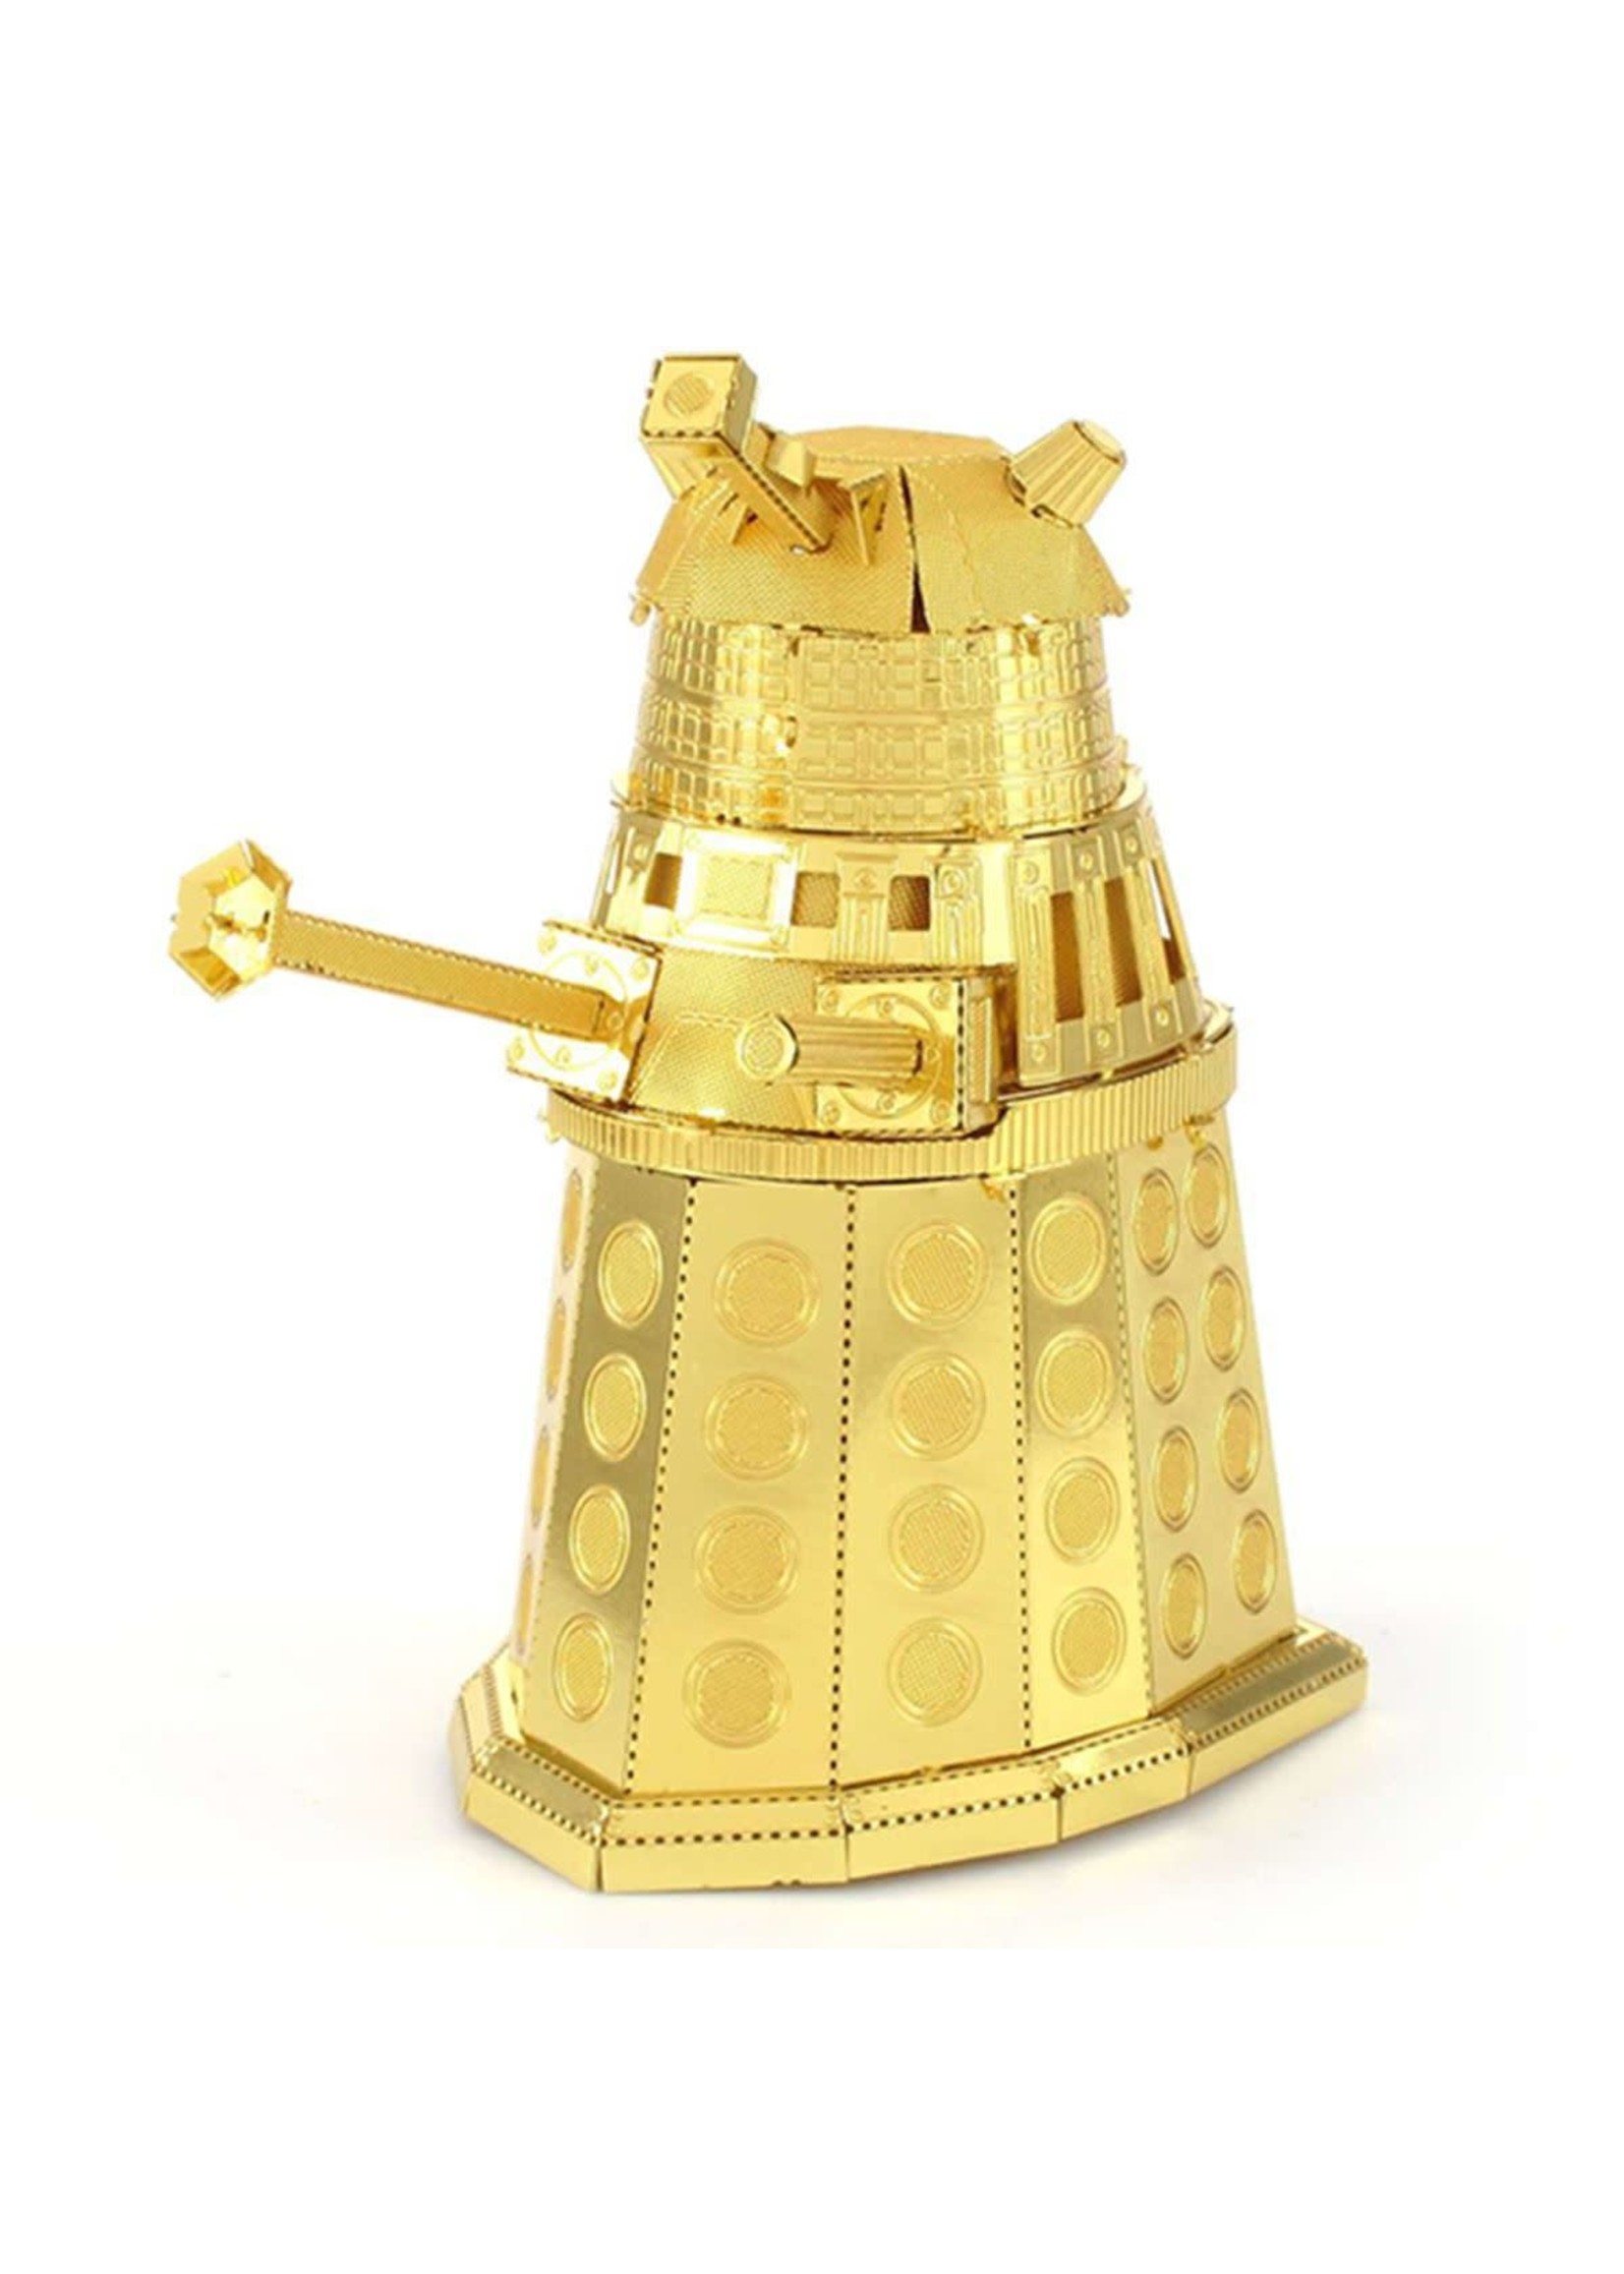 MetalWorks Dr. Who Gold Dalek